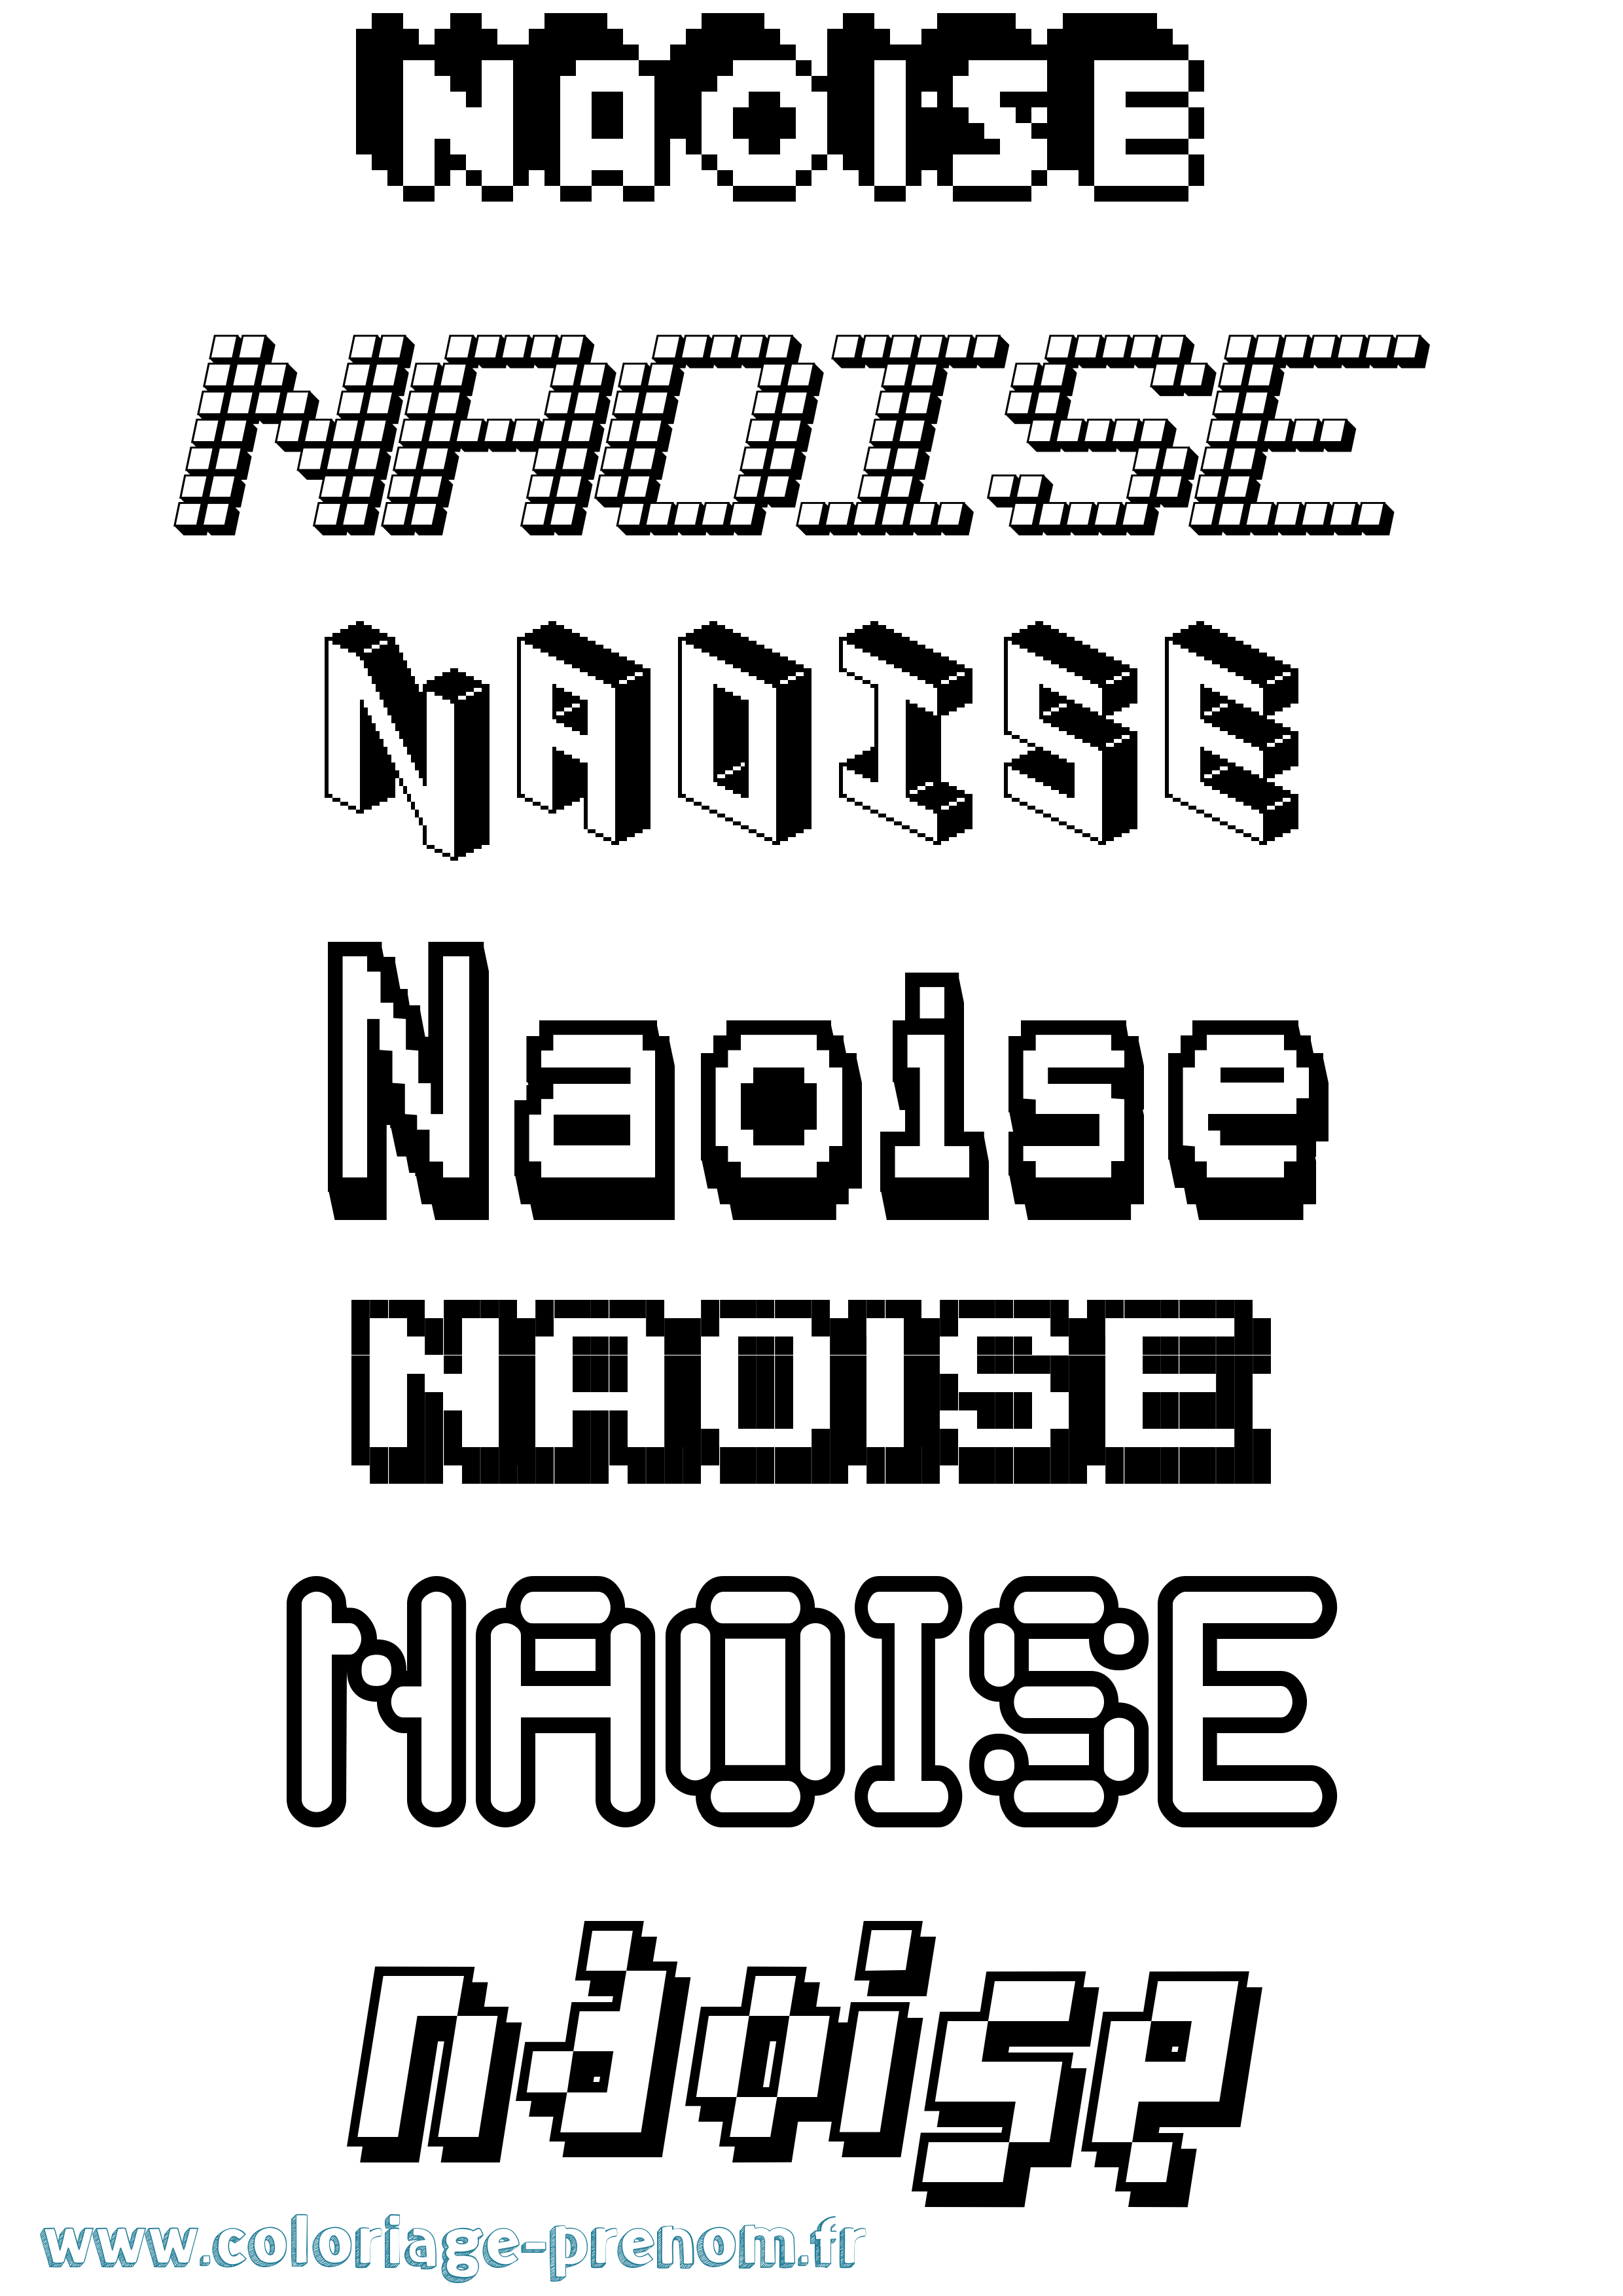 Coloriage prénom Naoise Pixel